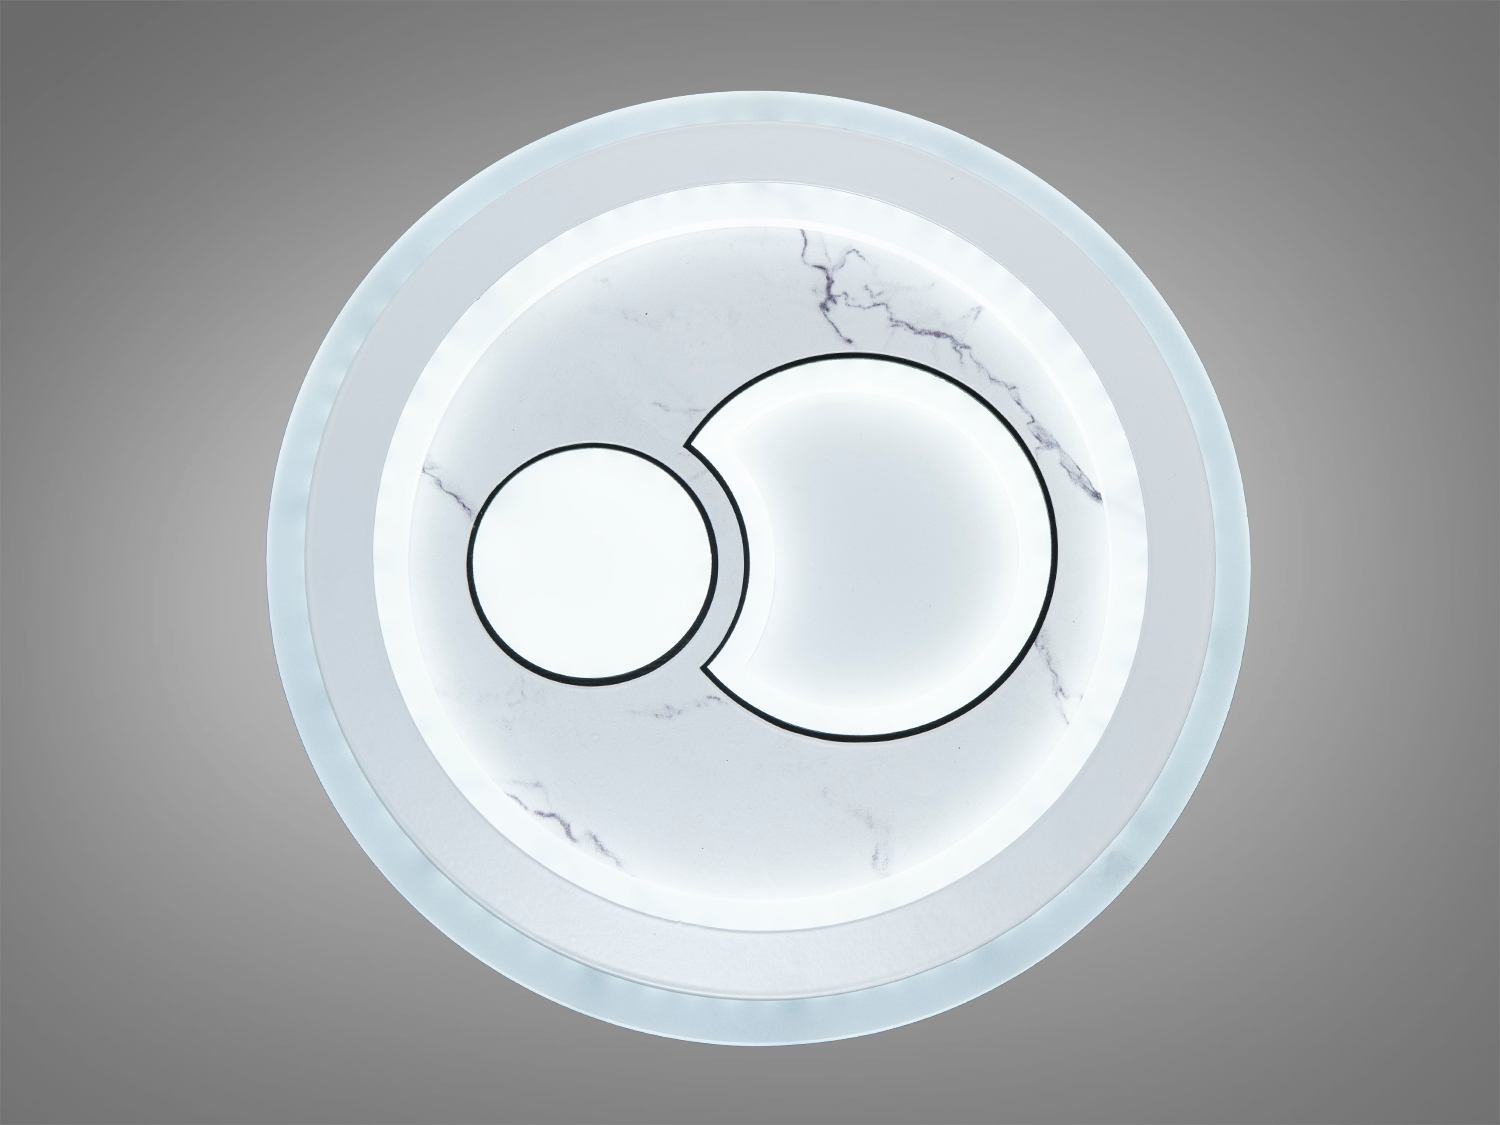 Наш мультифункціональний світлодіодний круглий світильник  - це сучасне та ефективне джерело освітлення для вашого простору. Завдяки круглій формі та найсучаснішим технологіям LED, цей світильник вигідно виділяється на фоні інших освітлювальних виробів.
Світлодіодні світильники та люстри оптом для забудовників – ТМ «Діаша» пропонує вам найширший вибір та оптимальні ціни для великомасштабних проектів.
Основні Характеристики:
Форма: Кругла (всередині гра геометричних фігур).
Матеріал корпусу: Високоякісний фарбований метал.
Матеріал плафону: Акрил.
Діаметр: 30 см - ідеальний для більшості приміщень.
Тип Світлодіодів: Високоефективні та енергоефективні світлодіоди.
Колірна Температура: вибір від теплого білого (3200K), природного білого (4100K) до холодного білого (6000K)
Регульована Яскравість: Так (3 рівні яскравості)
Світловий потік: 2640 люмен
Робочий Термін служби: до  30 000 годин
 Переваги та Особливості:
Енергоефективність:
Світлодіоди забезпечують високий рівень світлового потоку при мінімальному енергоспоживанні, що зменшує витрати на електроенергію.
Тривалість Роботи:
Довгий термін служби світлодіодів забезпечує стійкість та надійність освітлення протягом багатьох років.
Різноманітність Кольорів:
Вибір із теплого та холодного білого світла дозволяє вам адаптувати освітлення до різних обстановок та настрою.
Естетичний Дизайн:
Кругла форма світильника підходить для будь-якого інтер'єру, додаючи естетичну привабливість вашому простору.
Монтаж та Використання:
Легкий у монтажі, підходить для різних приміщень: від квартир і офісів до магазинів і ресторанів.
Екологічно Чистий:
Відсутність шкідливих ртутних компонентів робить його екологічно безпечним.
 
Часті запитання та відповіді про світлодіодні світильники:
Чи можна використовувати світлодіодний світильник у вологих приміщеннях, таких як ванна кімната?
Так, багато світлодіодних світильників мають високий ступінь захисту від вологи і підходять для ванних кімнат.
Як вибрати правильний розмір світлодіодного світильника для кімнати?
Рекомендуємо враховувати розмір кімнати та її призначення. Ми завжди готові допомогти вам обрати оптимальний розмір.
Скільки лампочок знаходиться у світлодіодному світильнику?
Кількість світлодіодів може варіюватися залежно від моделі. У цьому конкретному випадку, це може бути від 50 до 100 світлодіодів в залежності від потужності та моделі.
Які кольорові температури підходять для різних приміщень? Тепле біле світло (3200K) ідеально підходить для спальні, природне біле (4100K) для офісу, а холодне біле (6000K) для кухні чи областей, де потрібне яскраве освітлення.
Які переваги використання світлодіодного освітлення порівняно з іншими джерелами світла?
Світлодіоди енергоефективні, мають довгий термін служби, не випромінюють тепла та можуть бути розфарбованими у різні кольори.
Наш світлодіодний світильник  - це ідеальний вибір для тих, хто цінує стиль, функціональність та ефективність у своєму освітленні. Дбайливо розроблений та виготовлений, він гарантує найкращі параметри якості світла та комфорту в приміщенні.
Придбайте наш світлодіодний світильник і зробіть ваш простір яскравішим та більш ефективним!